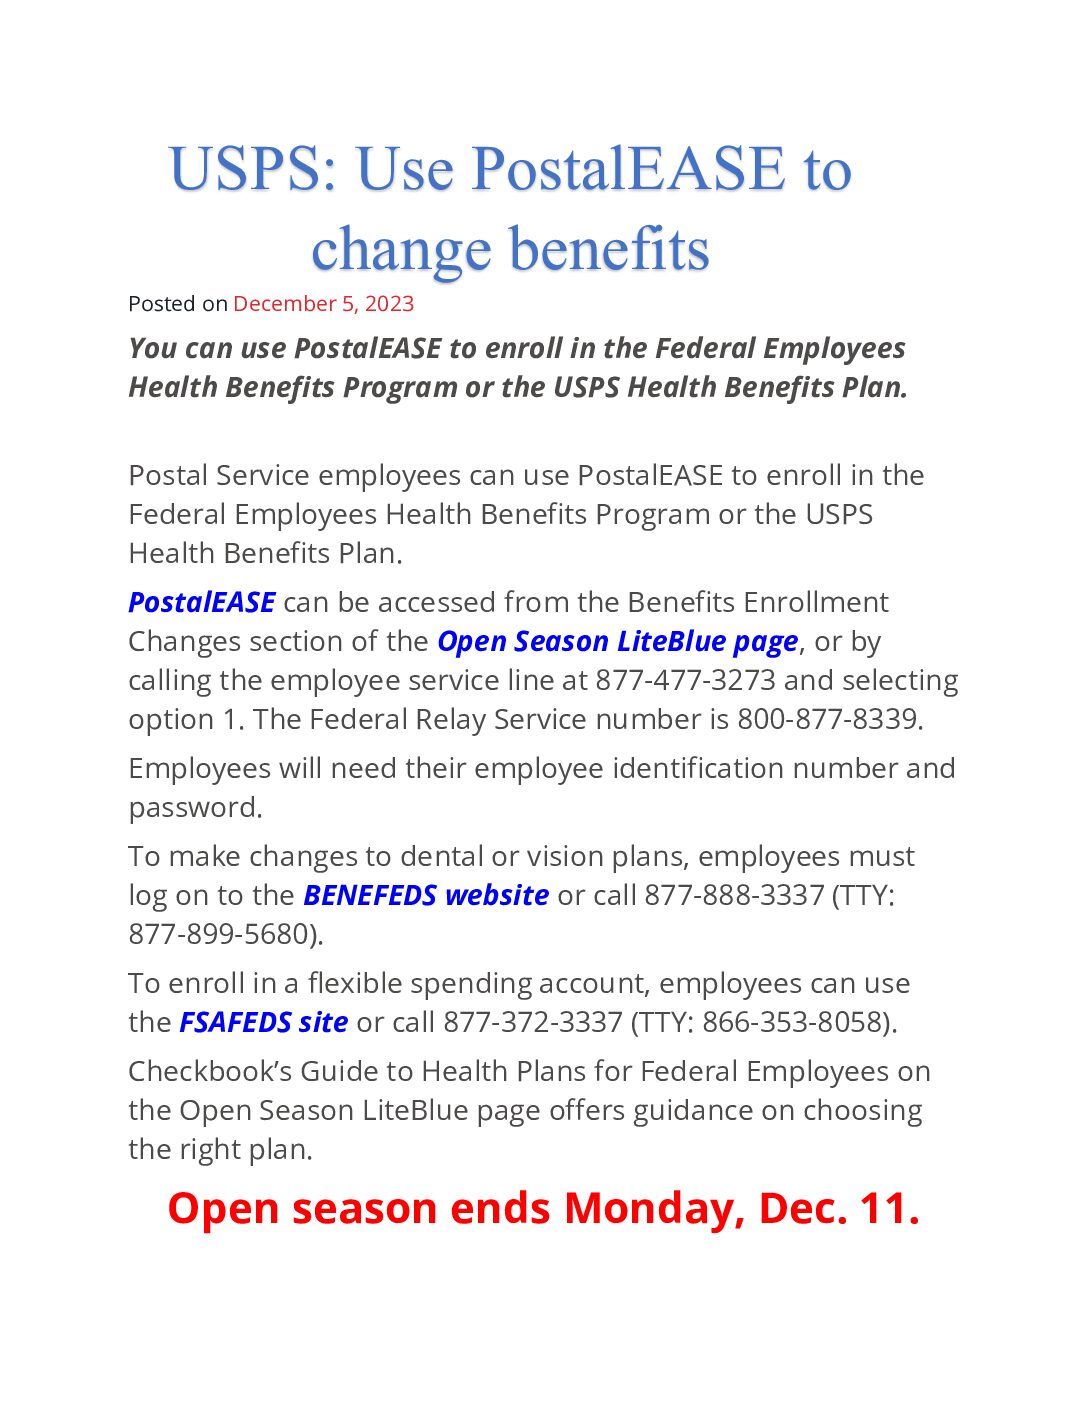 USPS: Use PostalEASE to change benefits - 